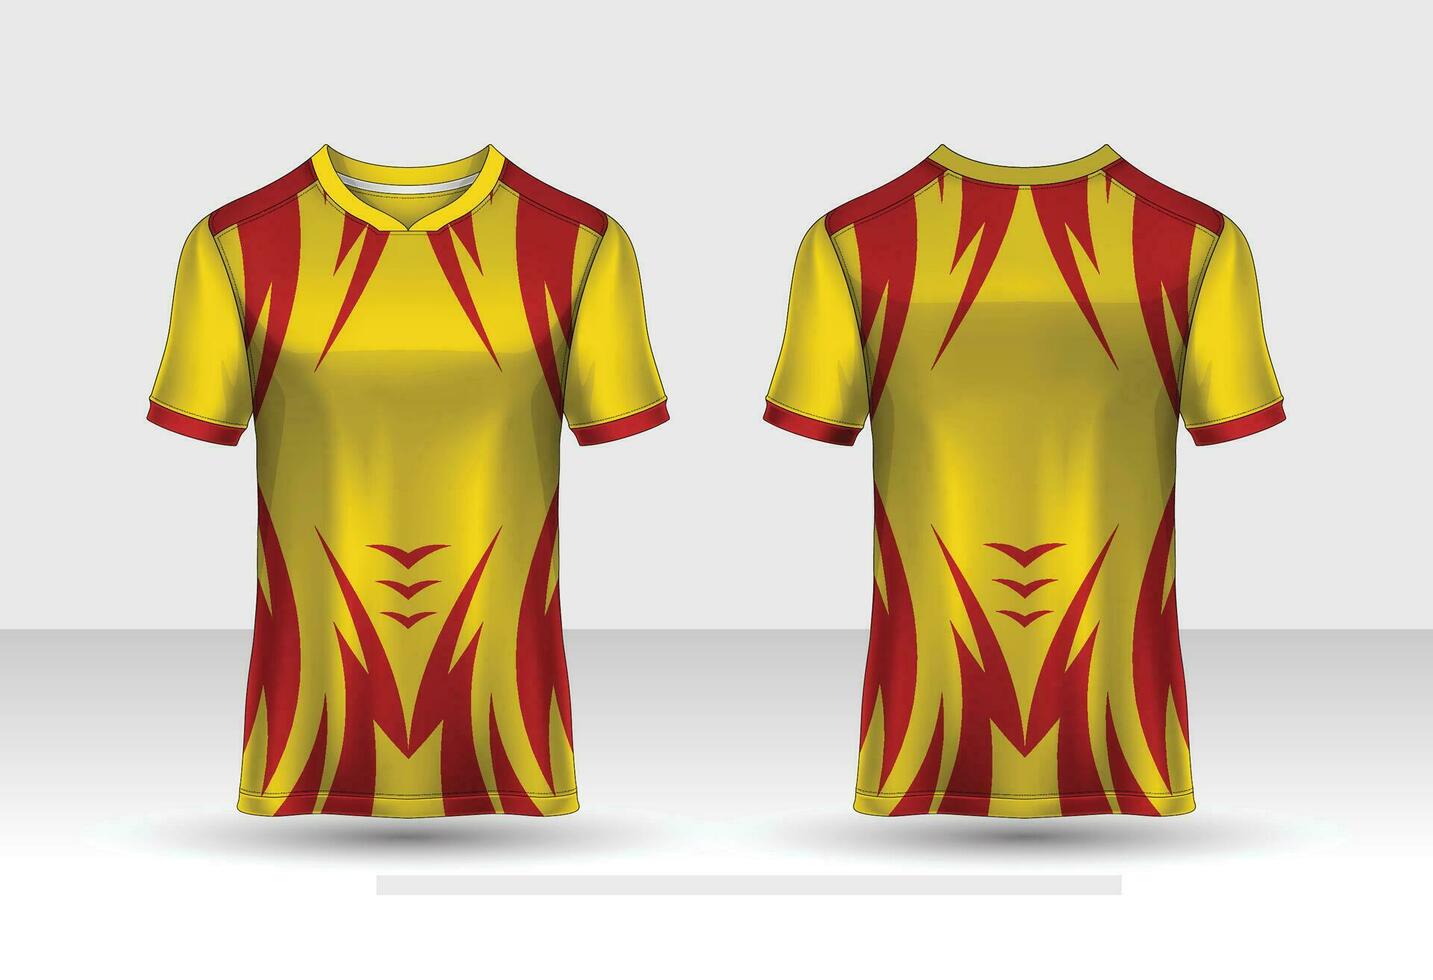 tyg textil- för sport t-shirt ,fotboll jersey attrapp för fotboll klubb. enhetlig främre och tillbaka se. vektor